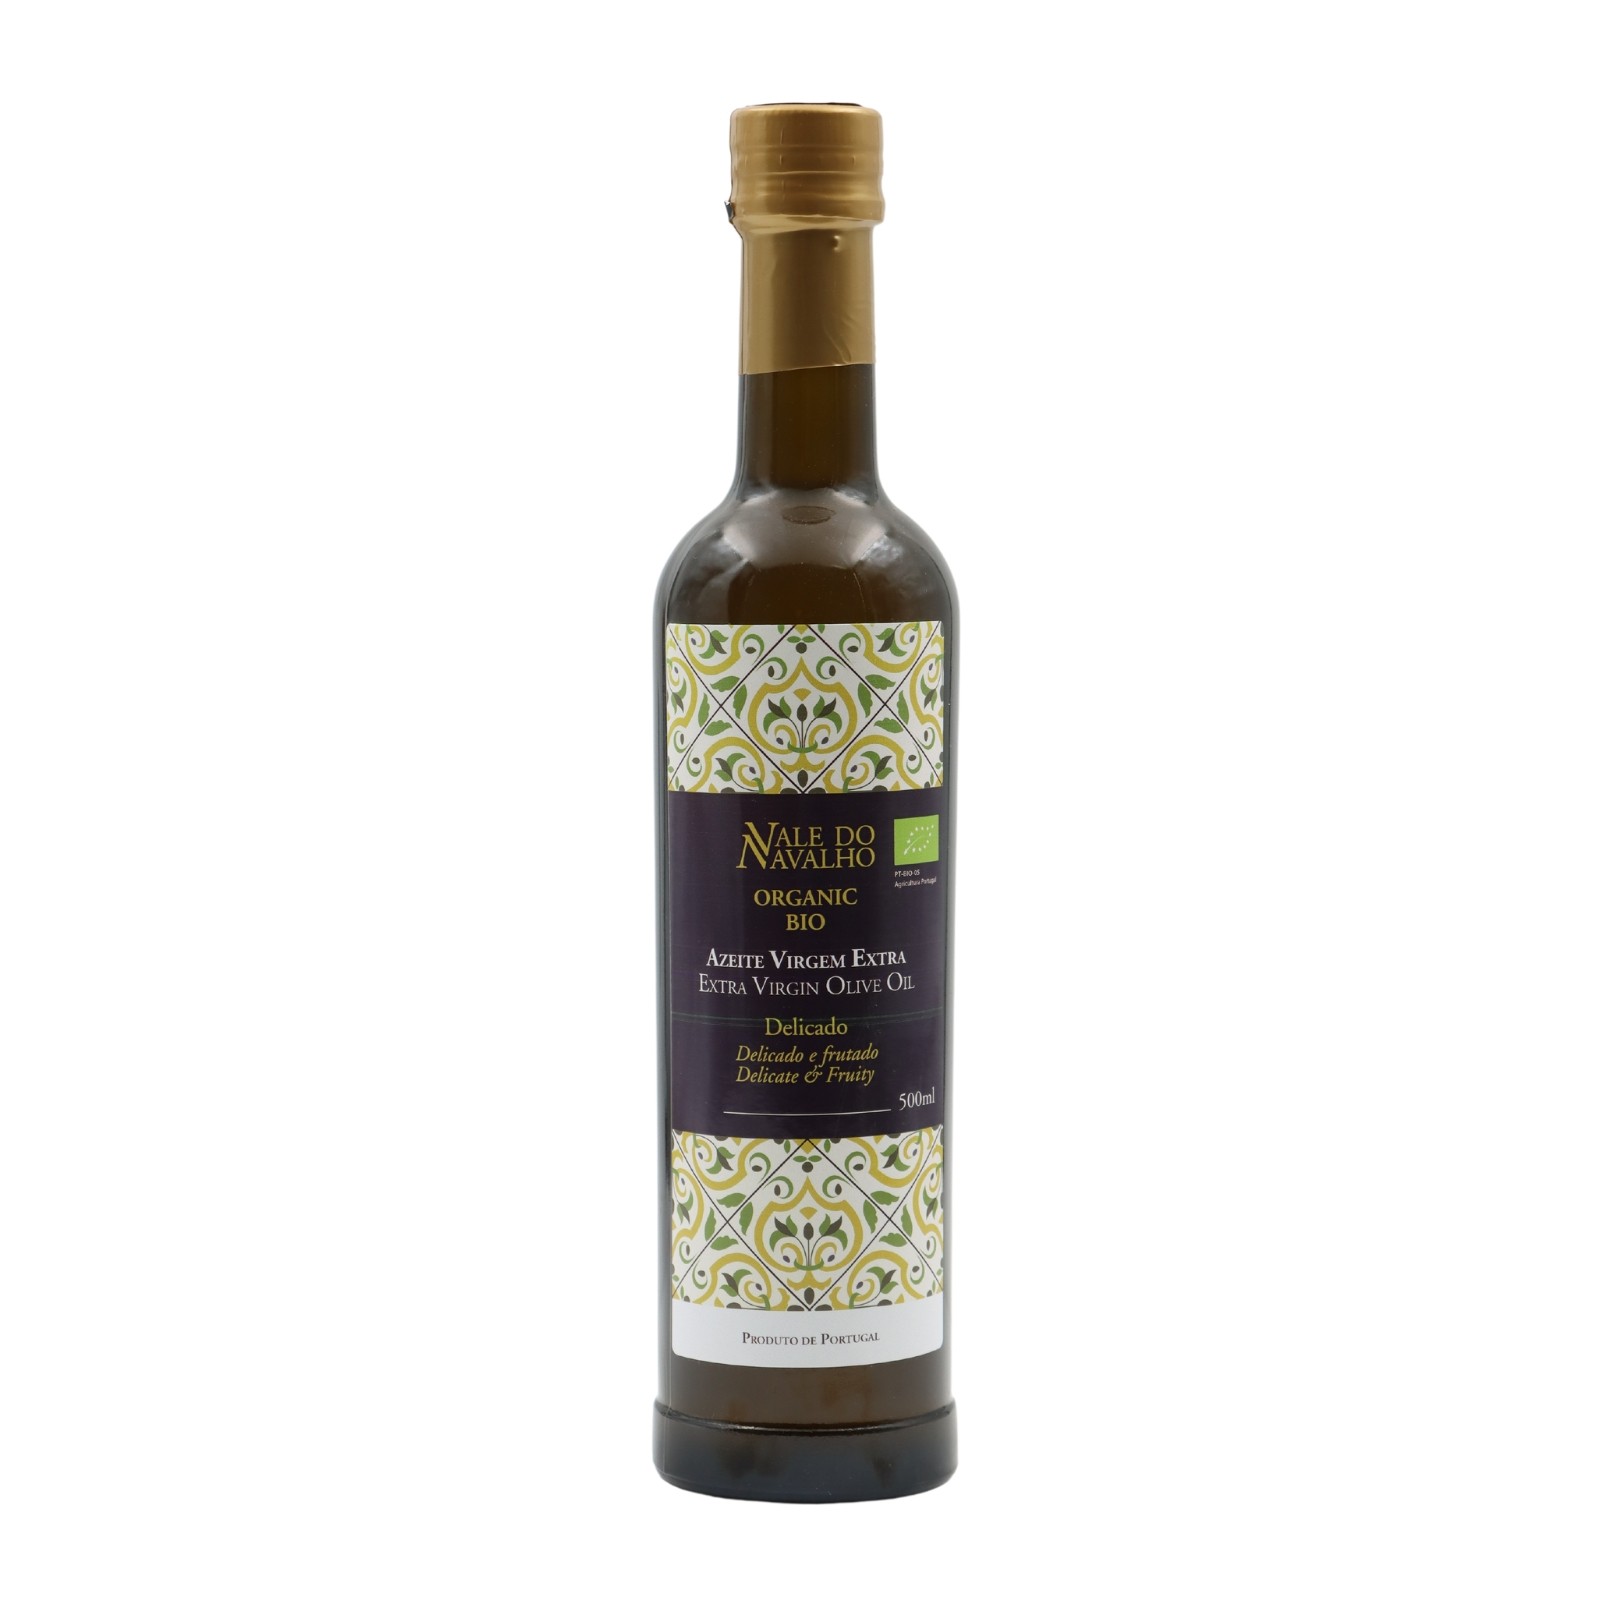 Vale do Navalho Delicate Extra Virgin Olive Oil